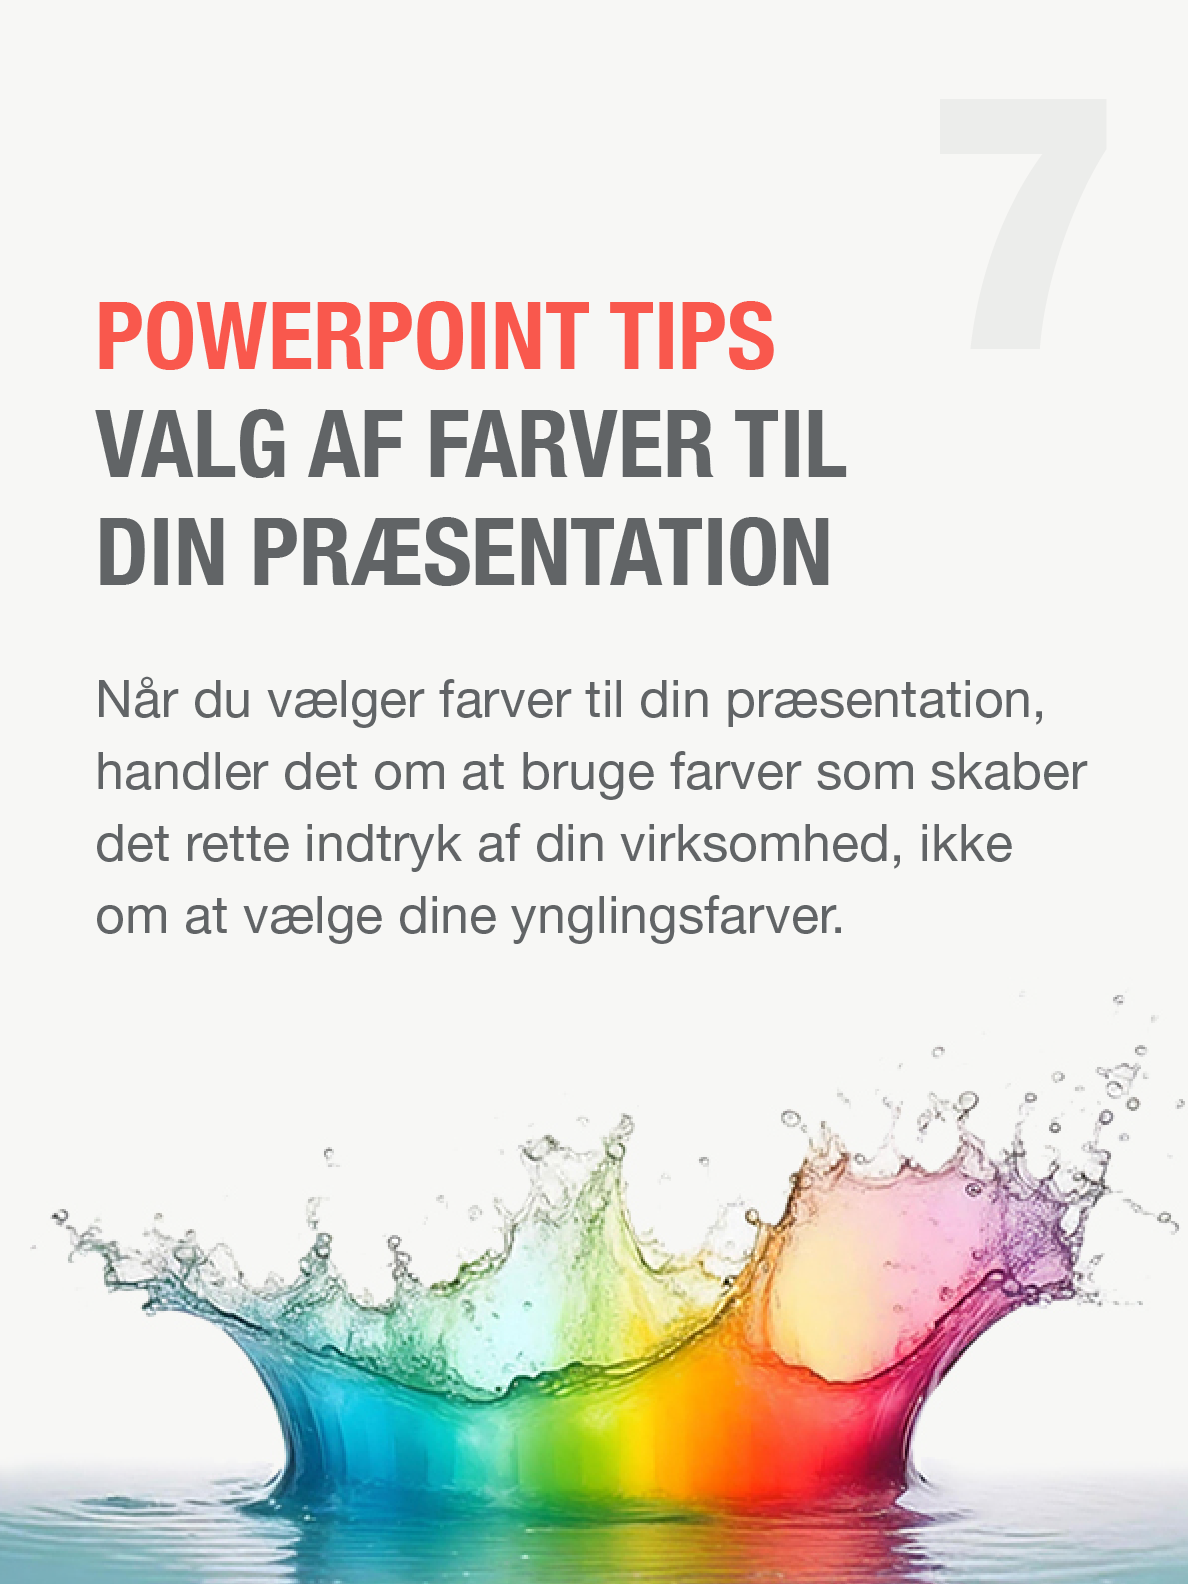 PowerPoint tip 7 - Valg af farver til din PowerPoint præsentation. Powerpoint template, PowerPoint skabeloner, design af PowerPoint præsentationer